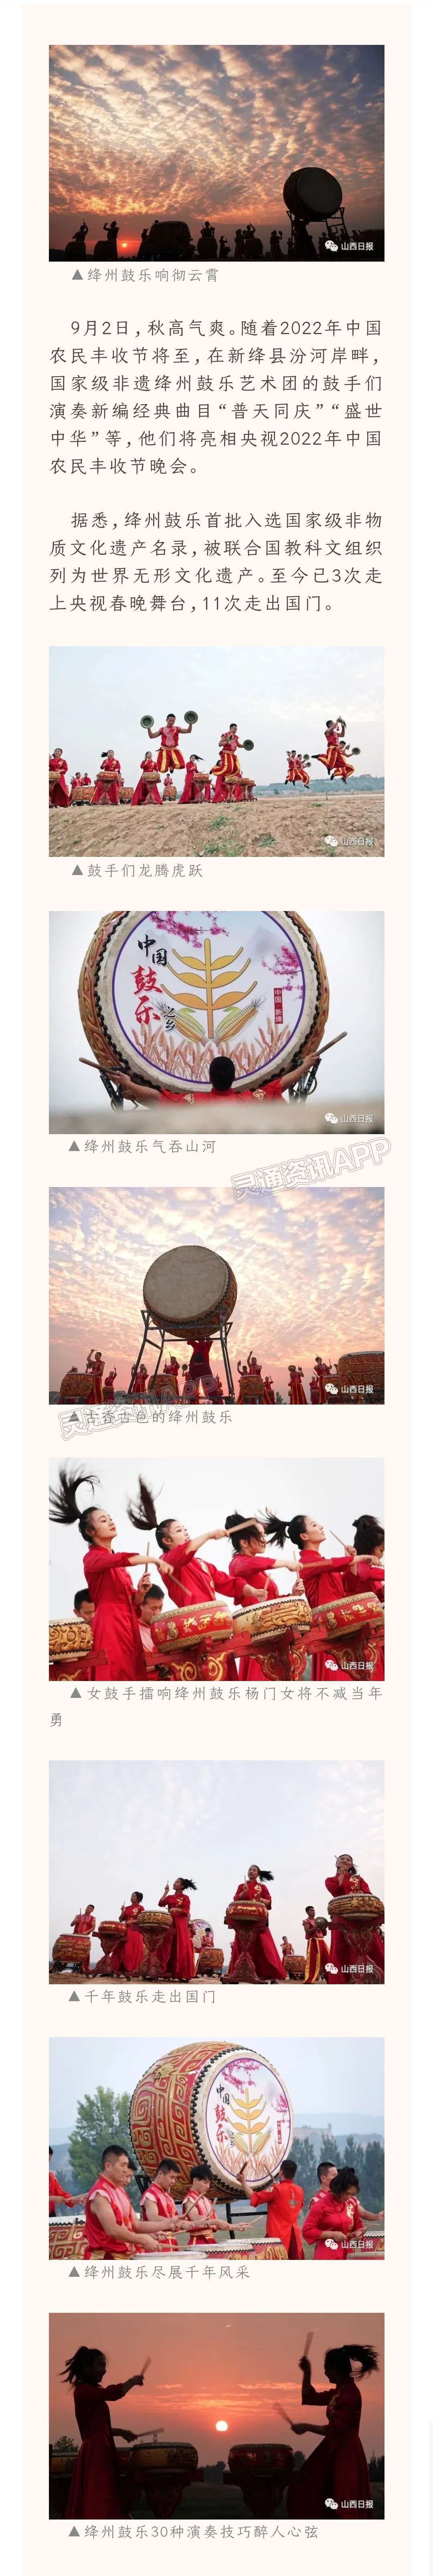 【米乐M6官网】期待！绛州鼓乐艺术团将亮相央视2022年中国农民丰收节晚会(图1)